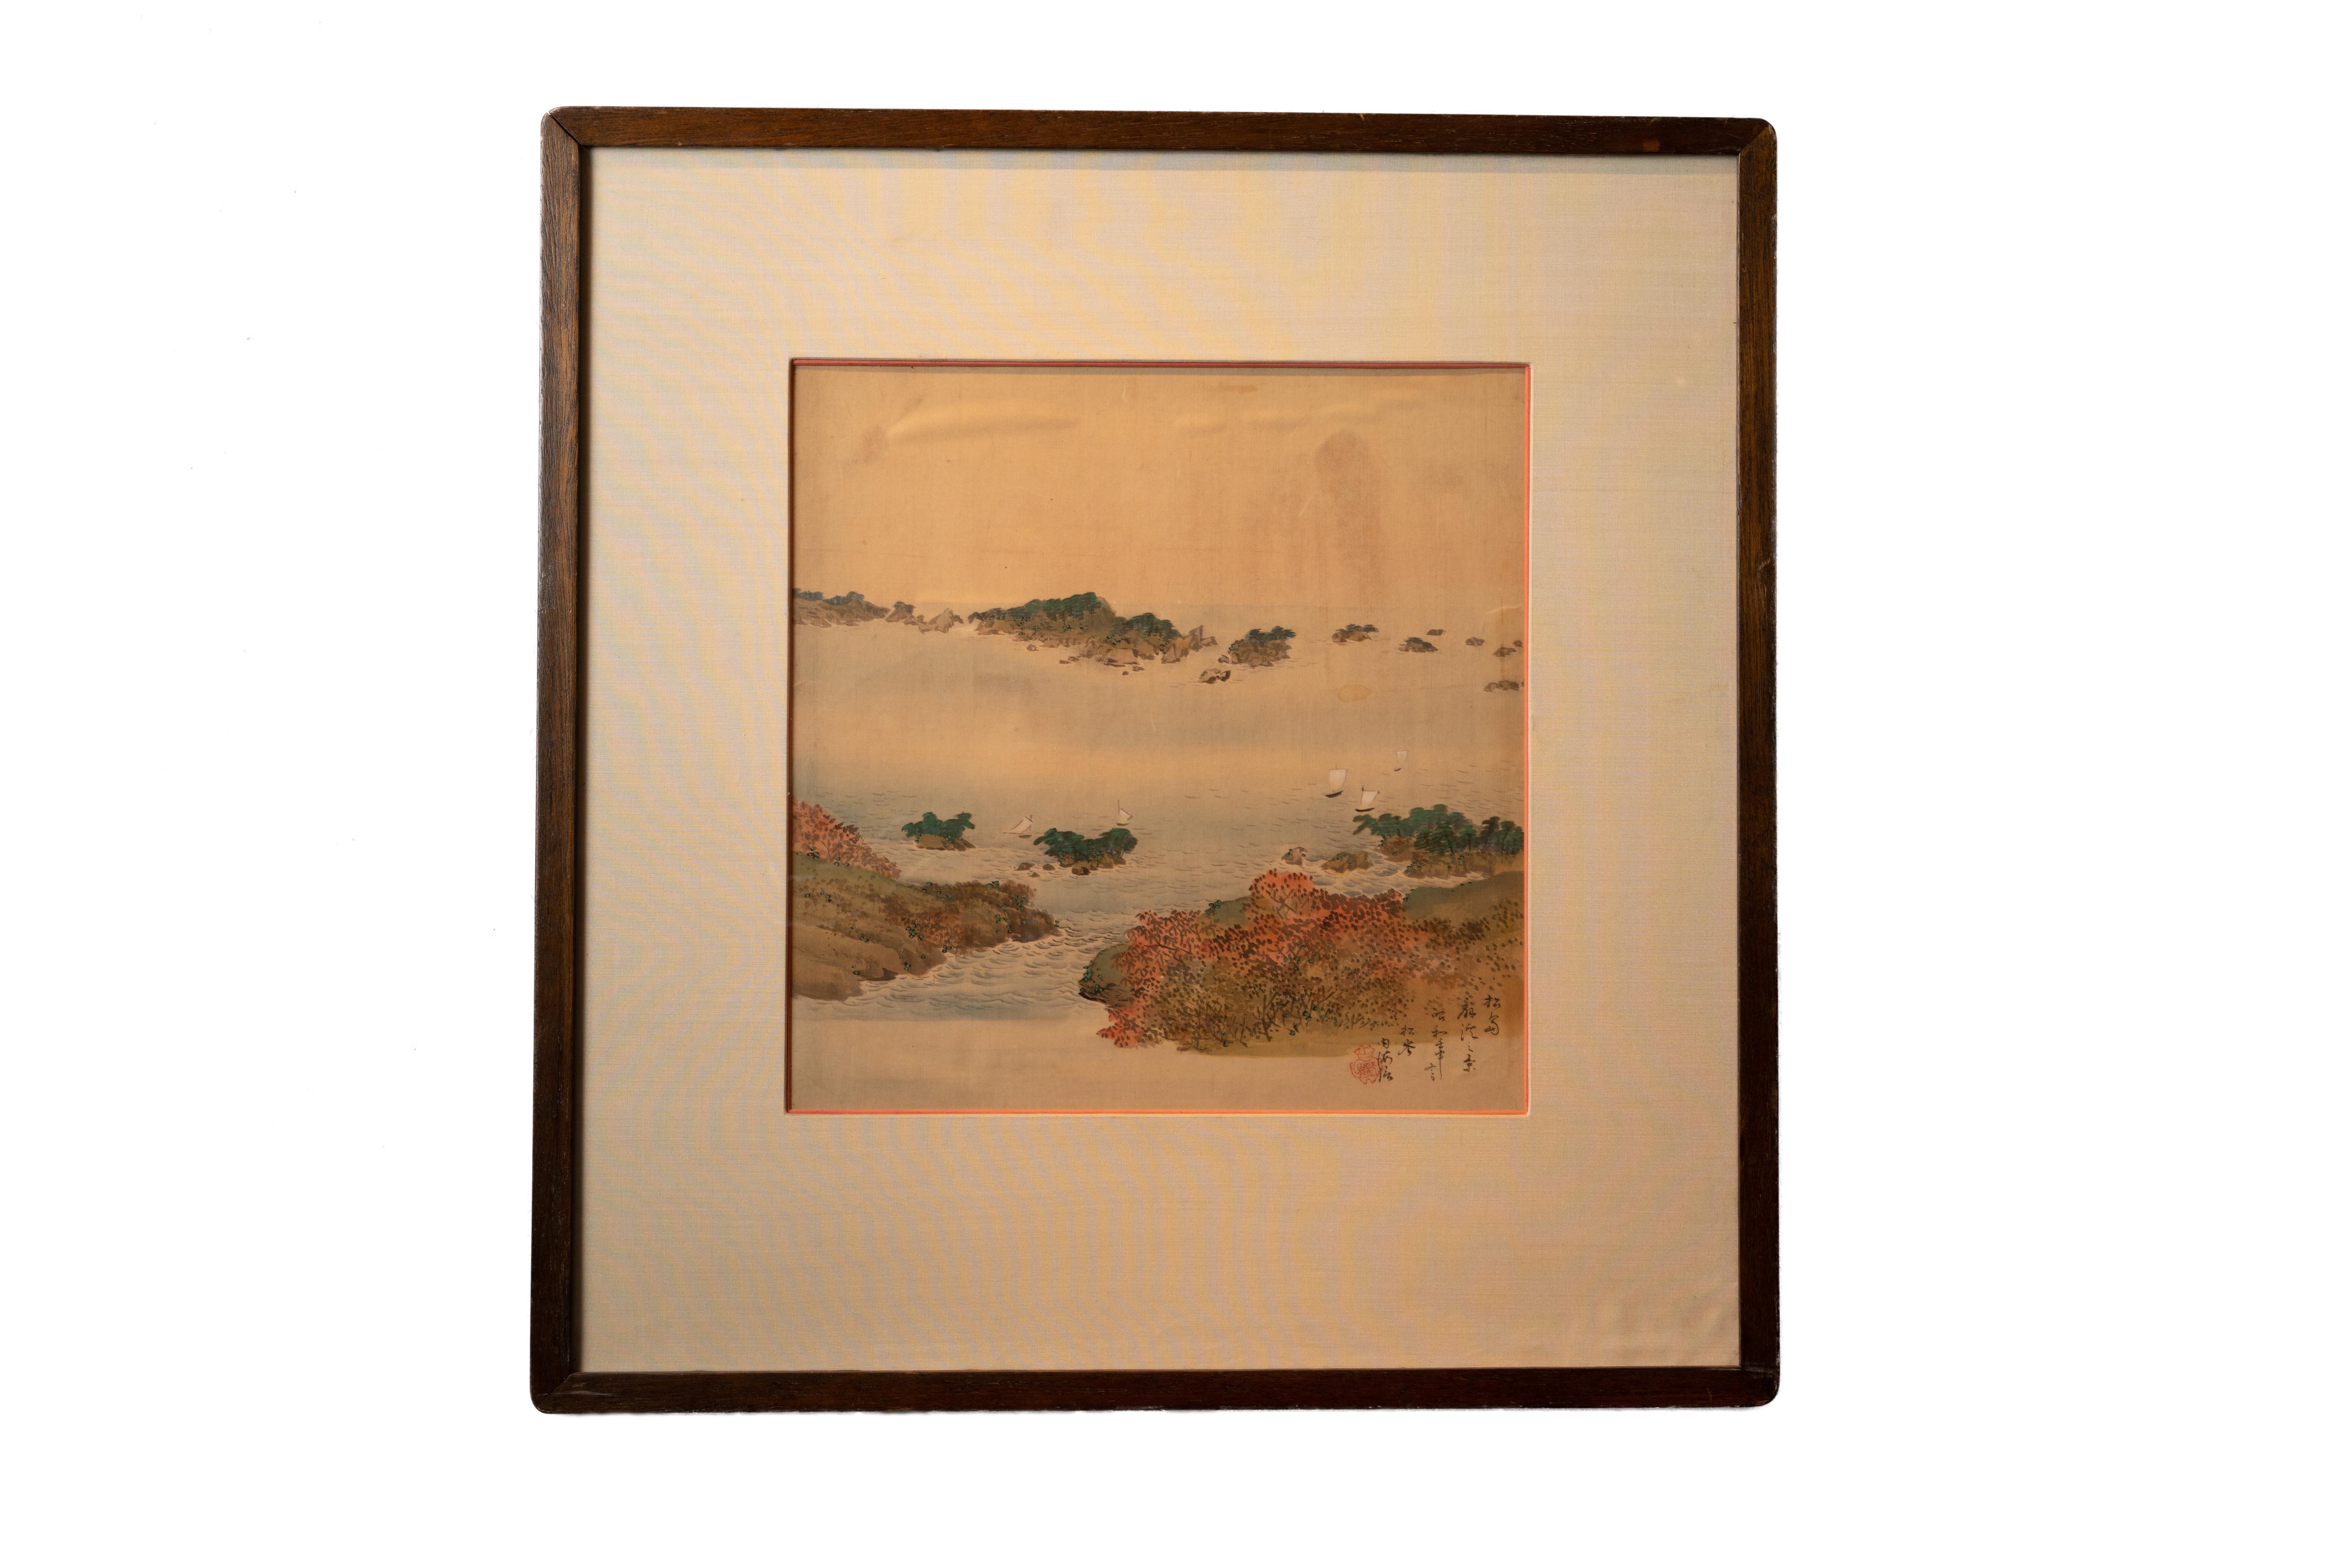 Scène de montagne chinoise, par Unknown, aquarelle sur peinture sur soie